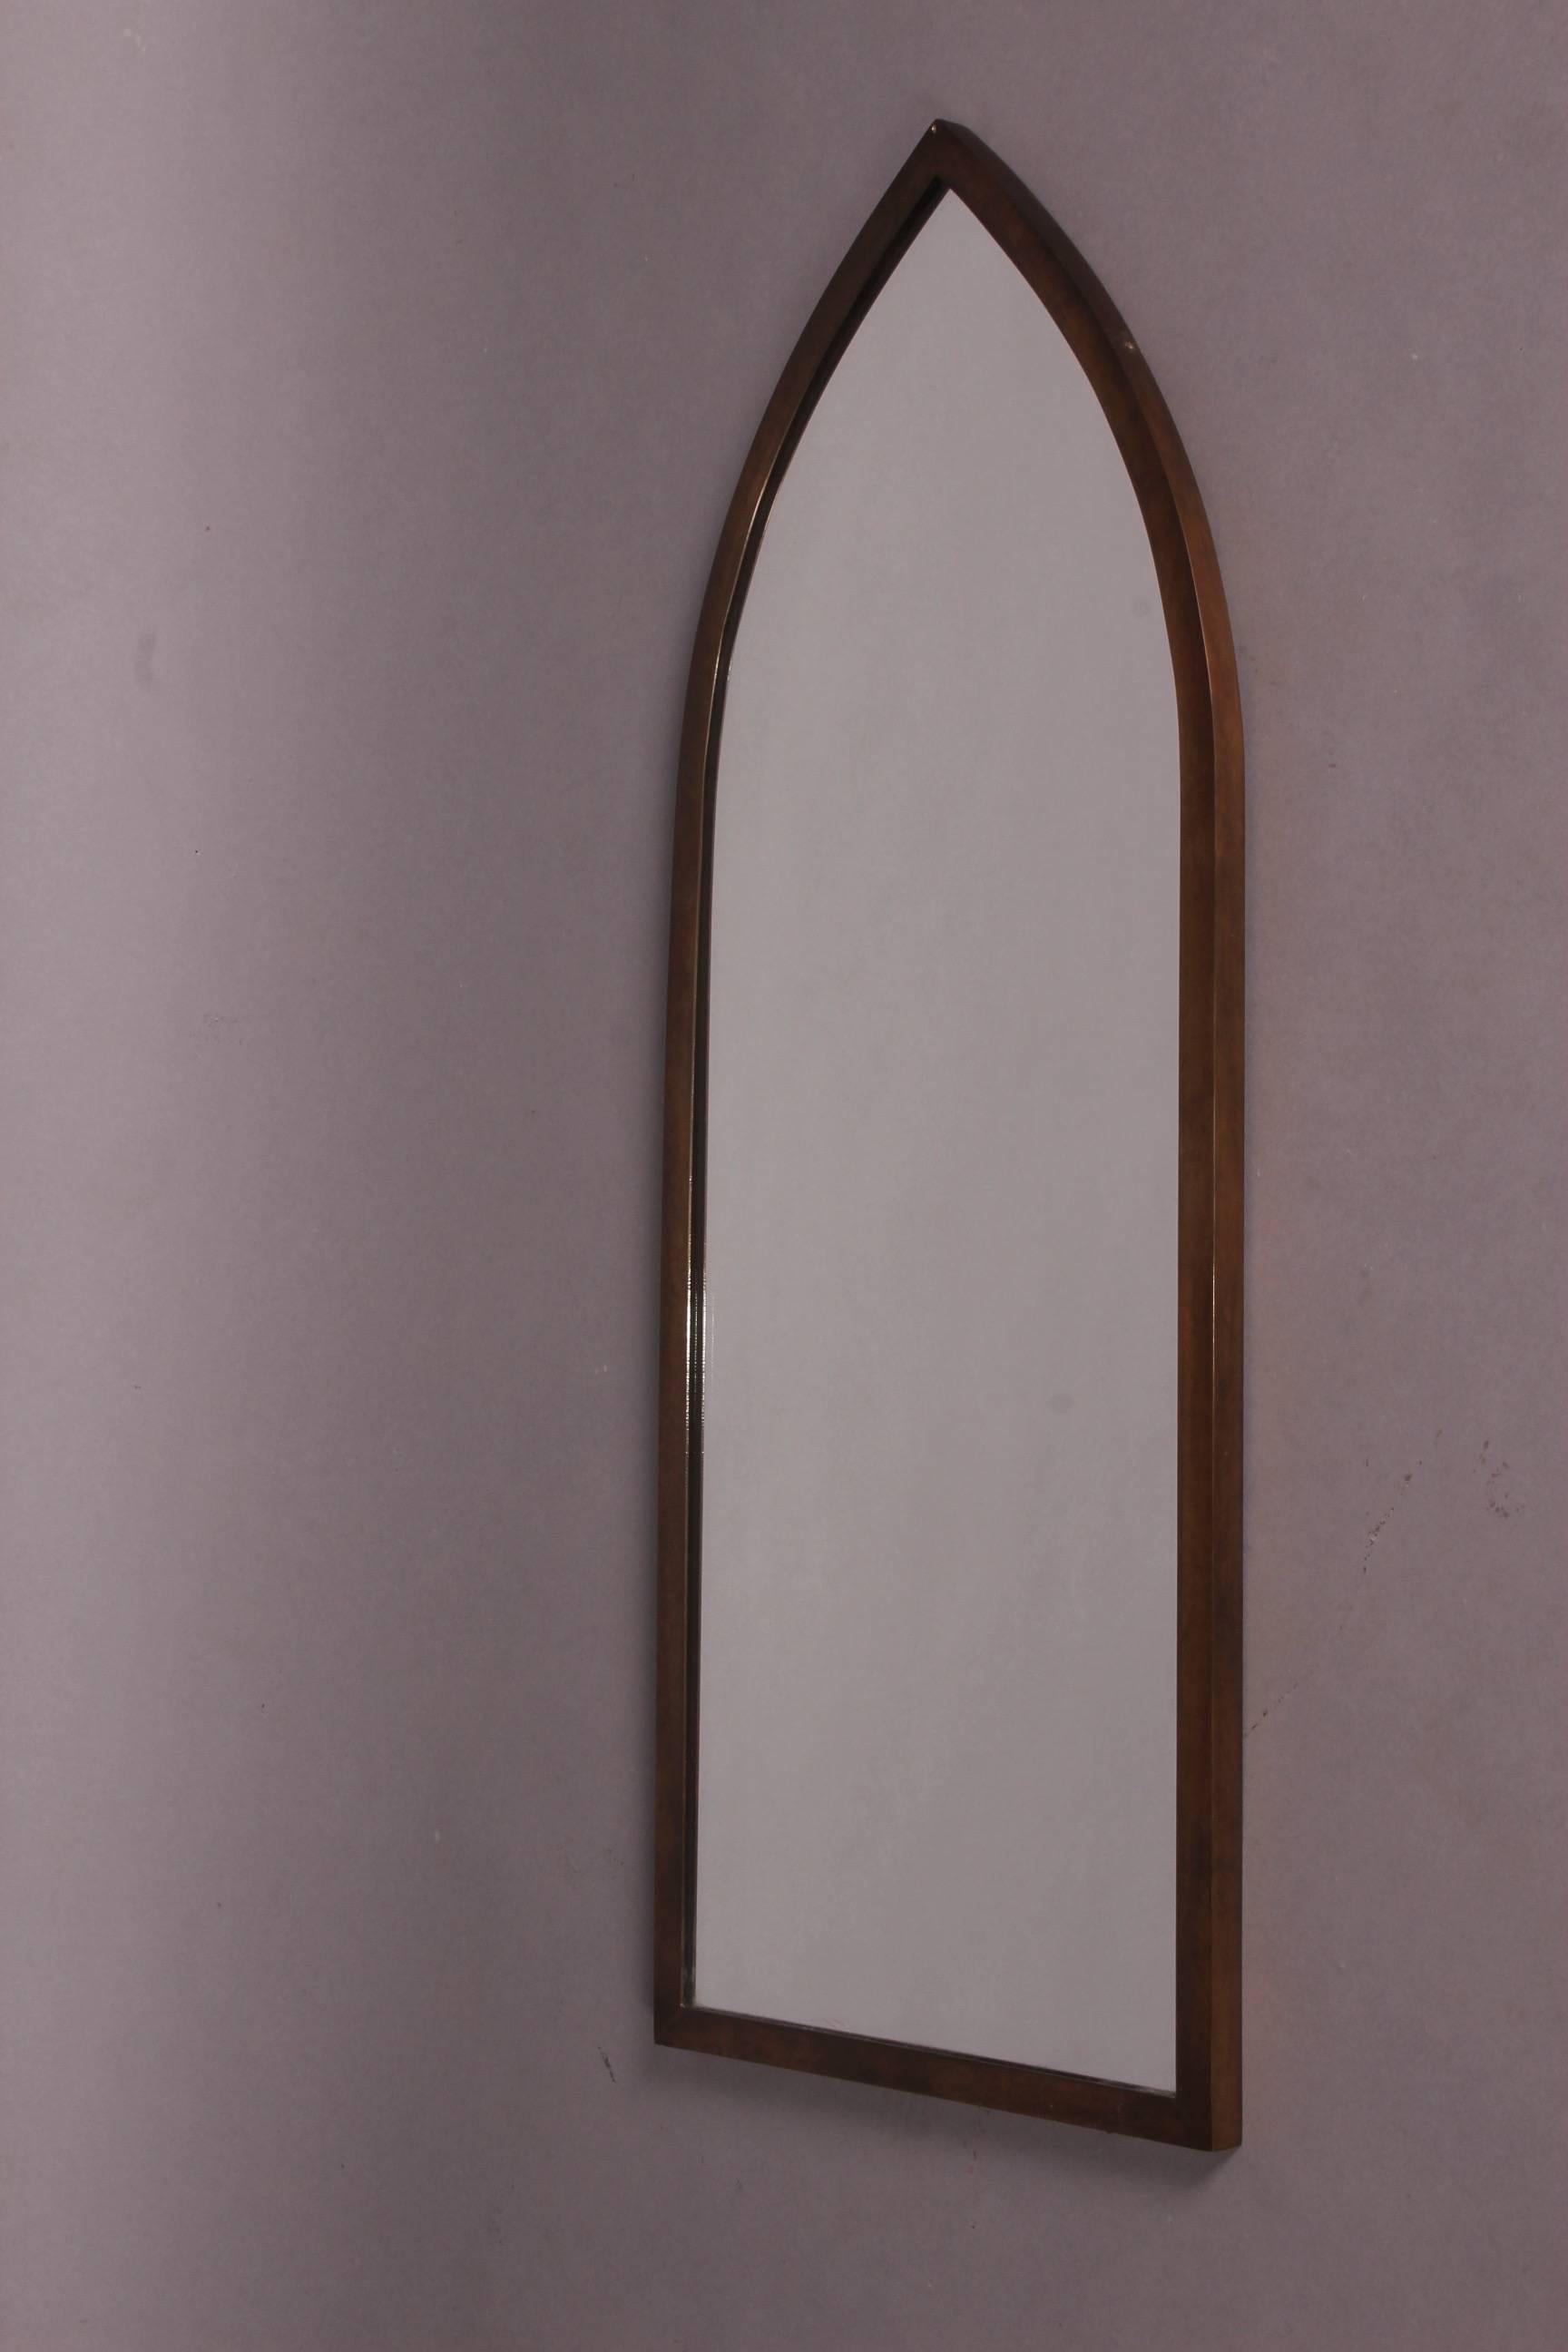 Gabriella Crespi style mirror.